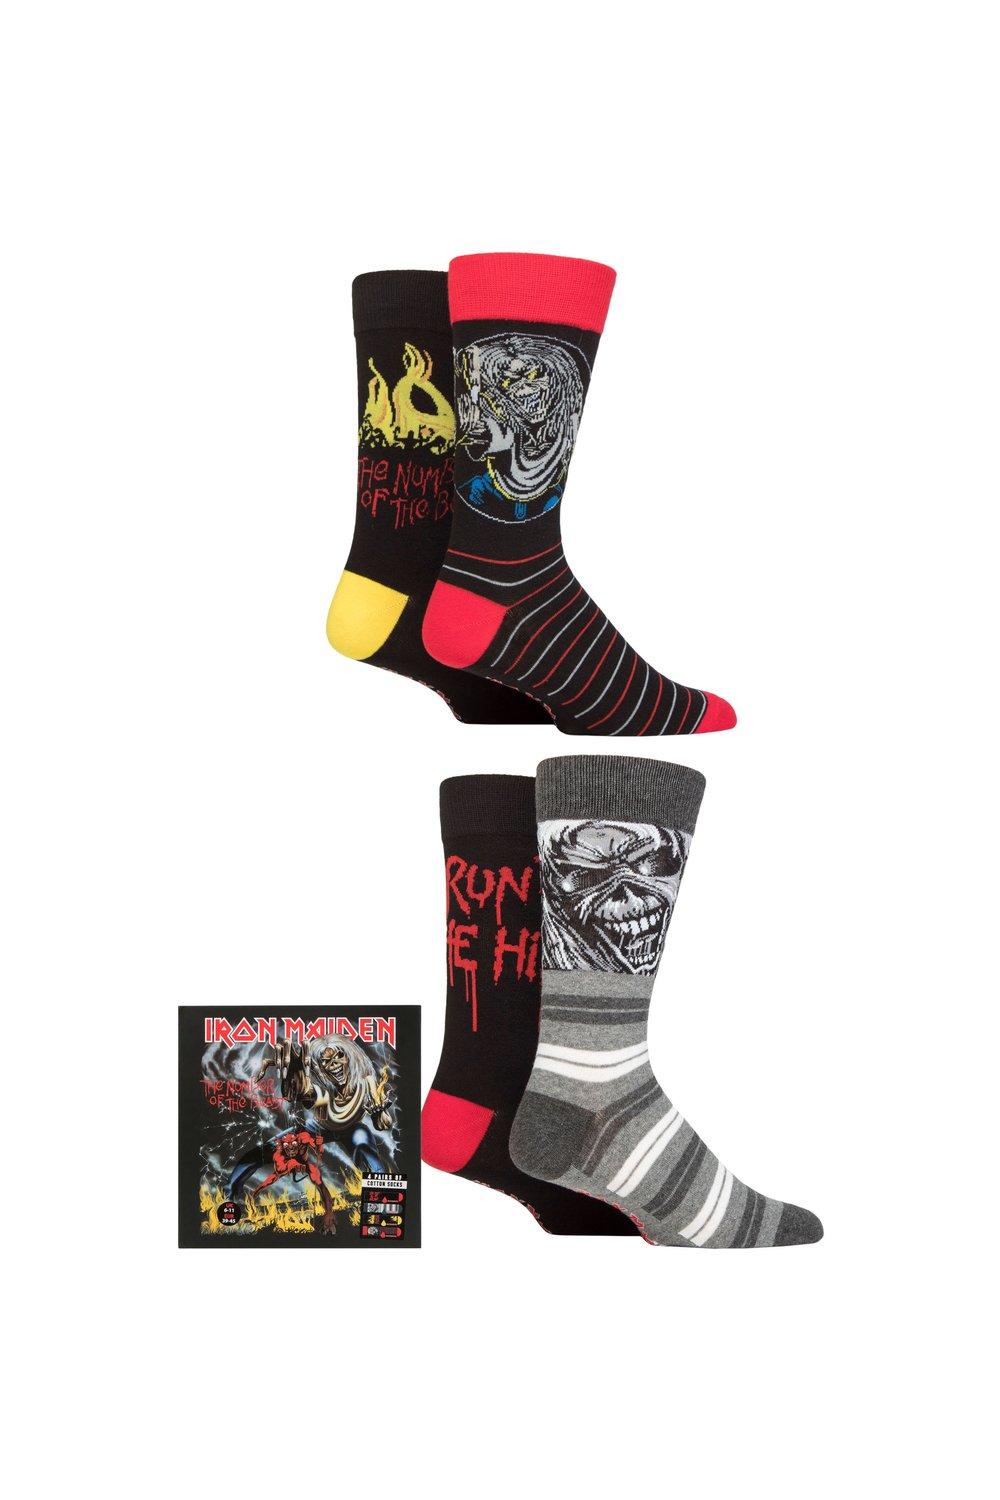 Iron Maiden, 4 пары хлопковых носков в подарочной упаковке, эксклюзивно для SOCKSHOP, мультиколор iron maiden iron maiden number of the beast